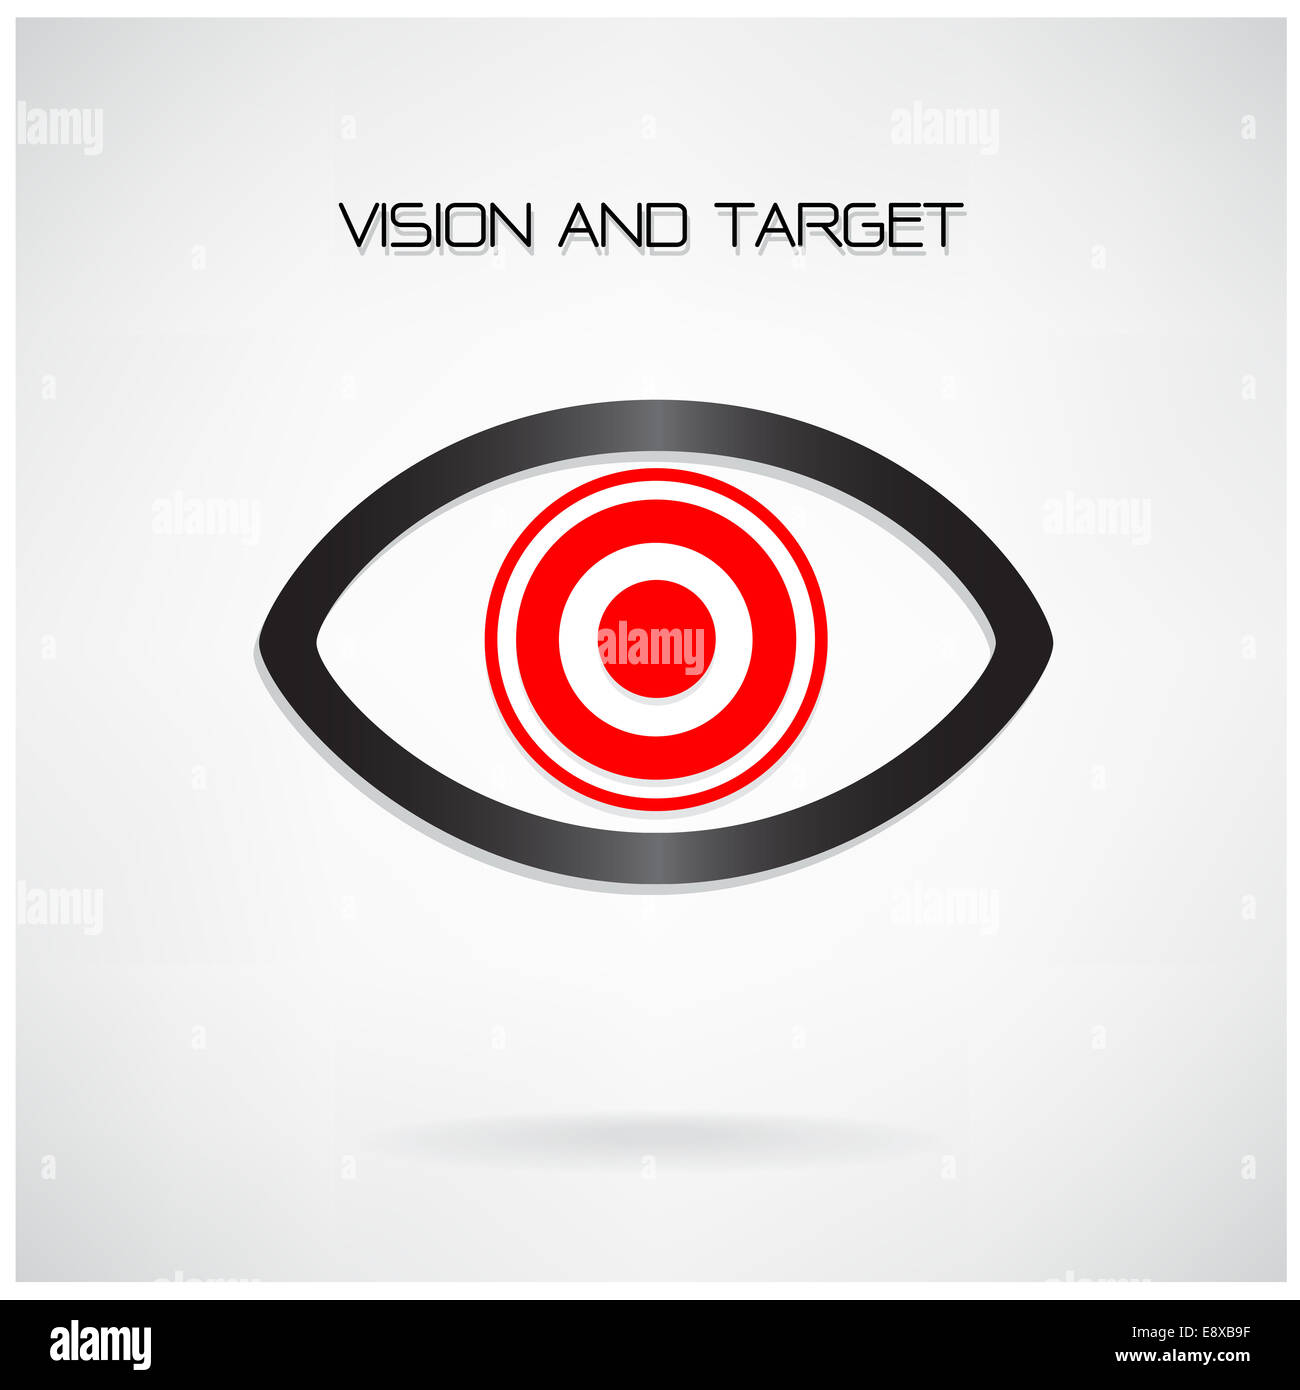 Visione e obiettivo concetto ,simbolo dell'occhio,business idea ,abstract background. Foto Stock